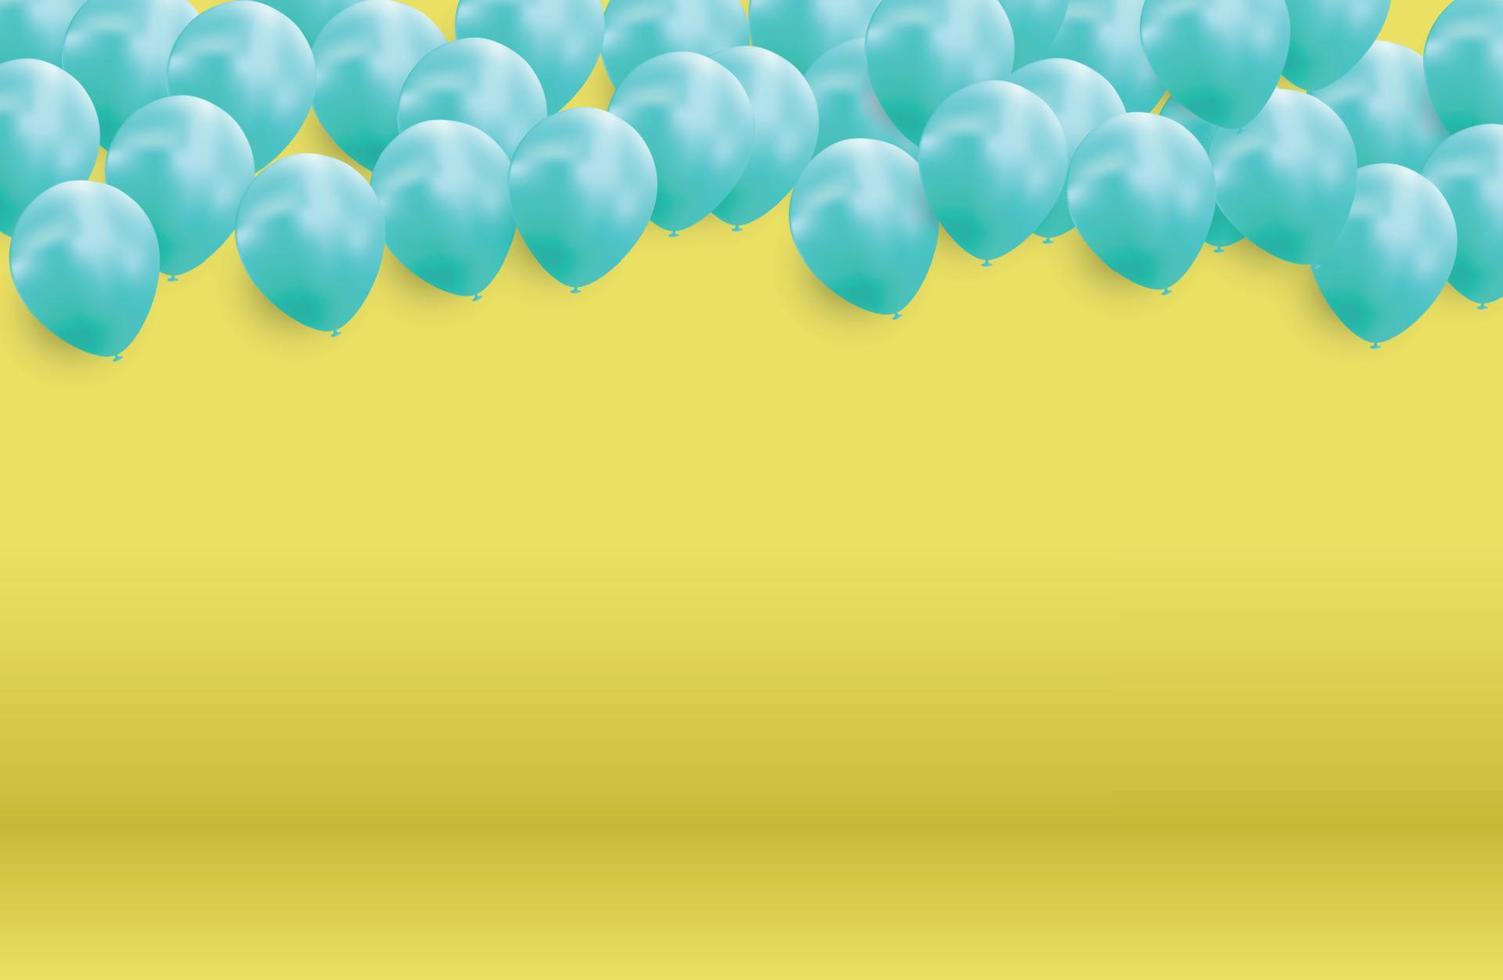 glänsande grattis på födelsedagen ballonger bakgrund vektor illustration